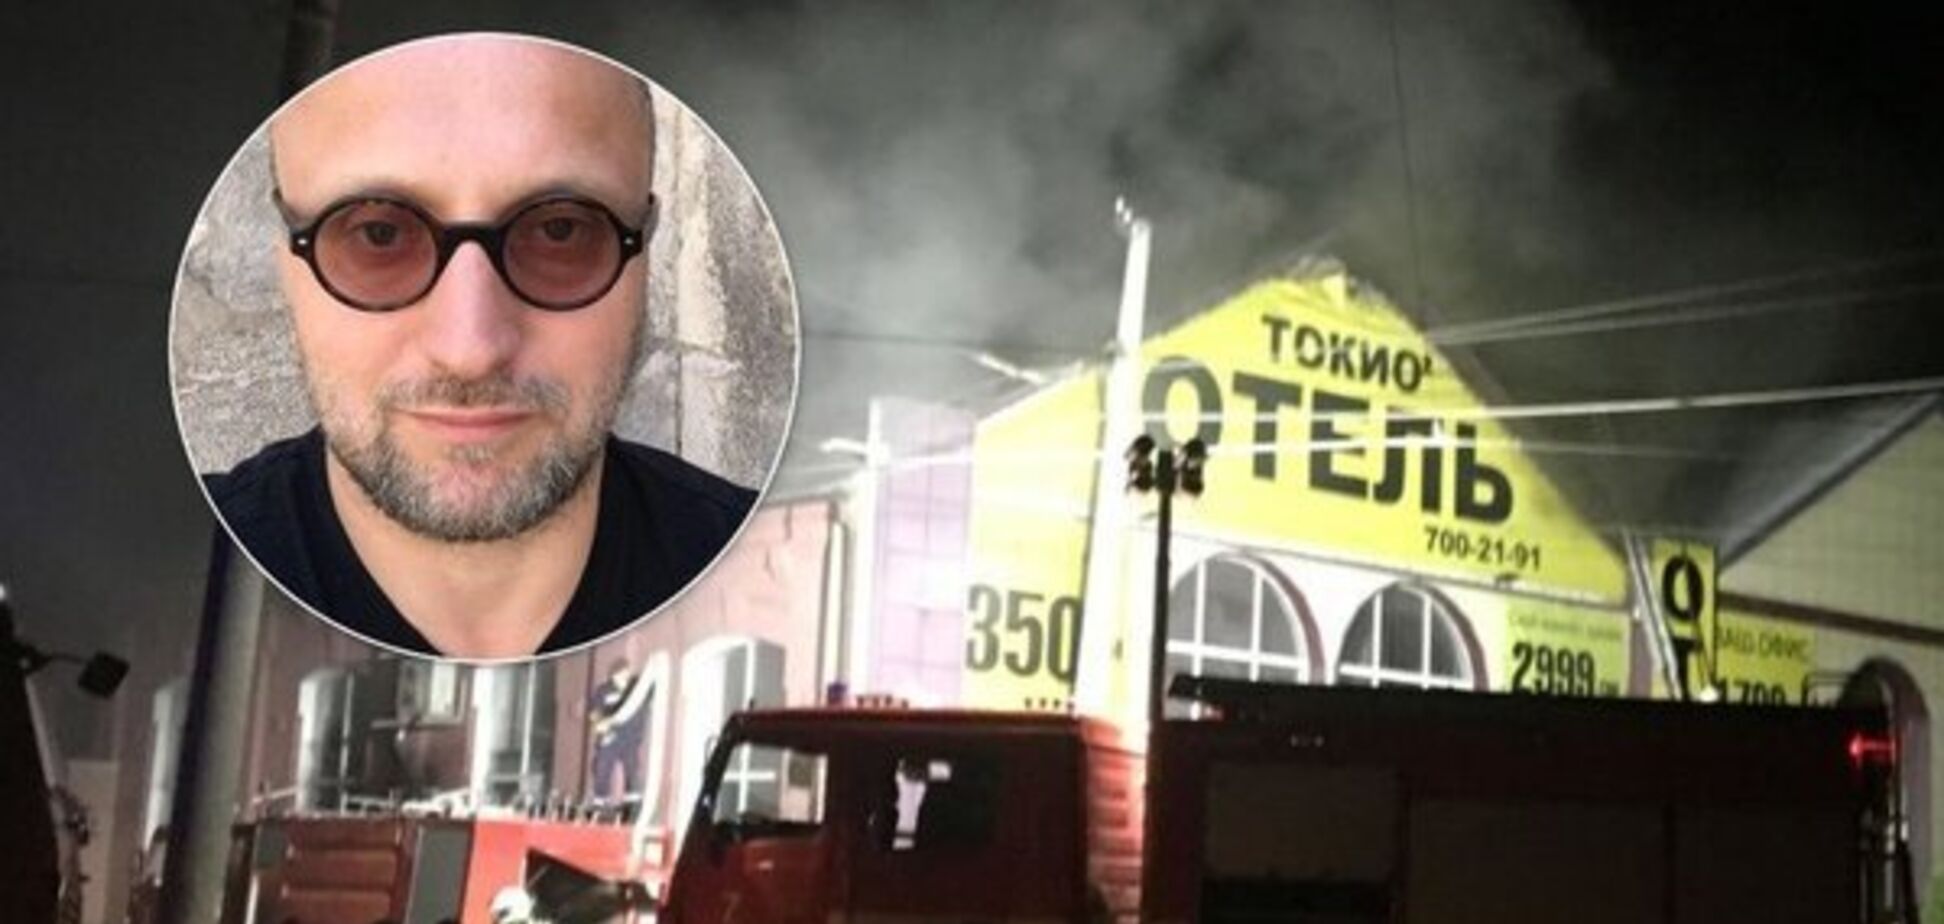 'Ну, б**, бывает': нашелся блог владельца сгоревшего 'Токио Стар' о пожаре в 'Виктории' и Кемерово